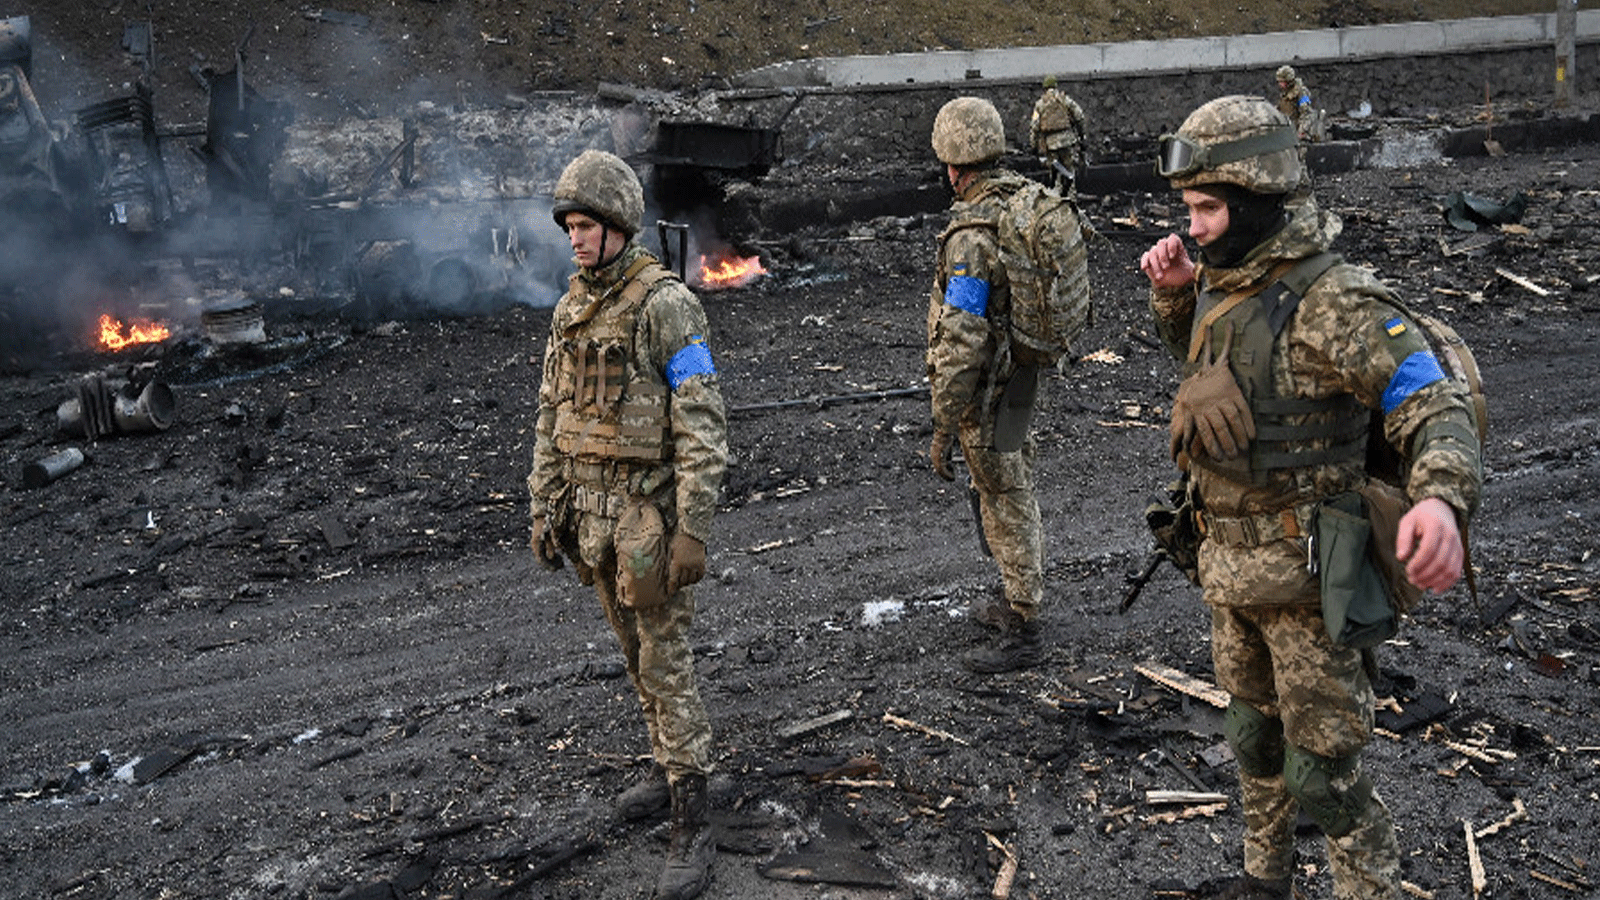 لقطة من المعارك الدائرة في أوكرانيا